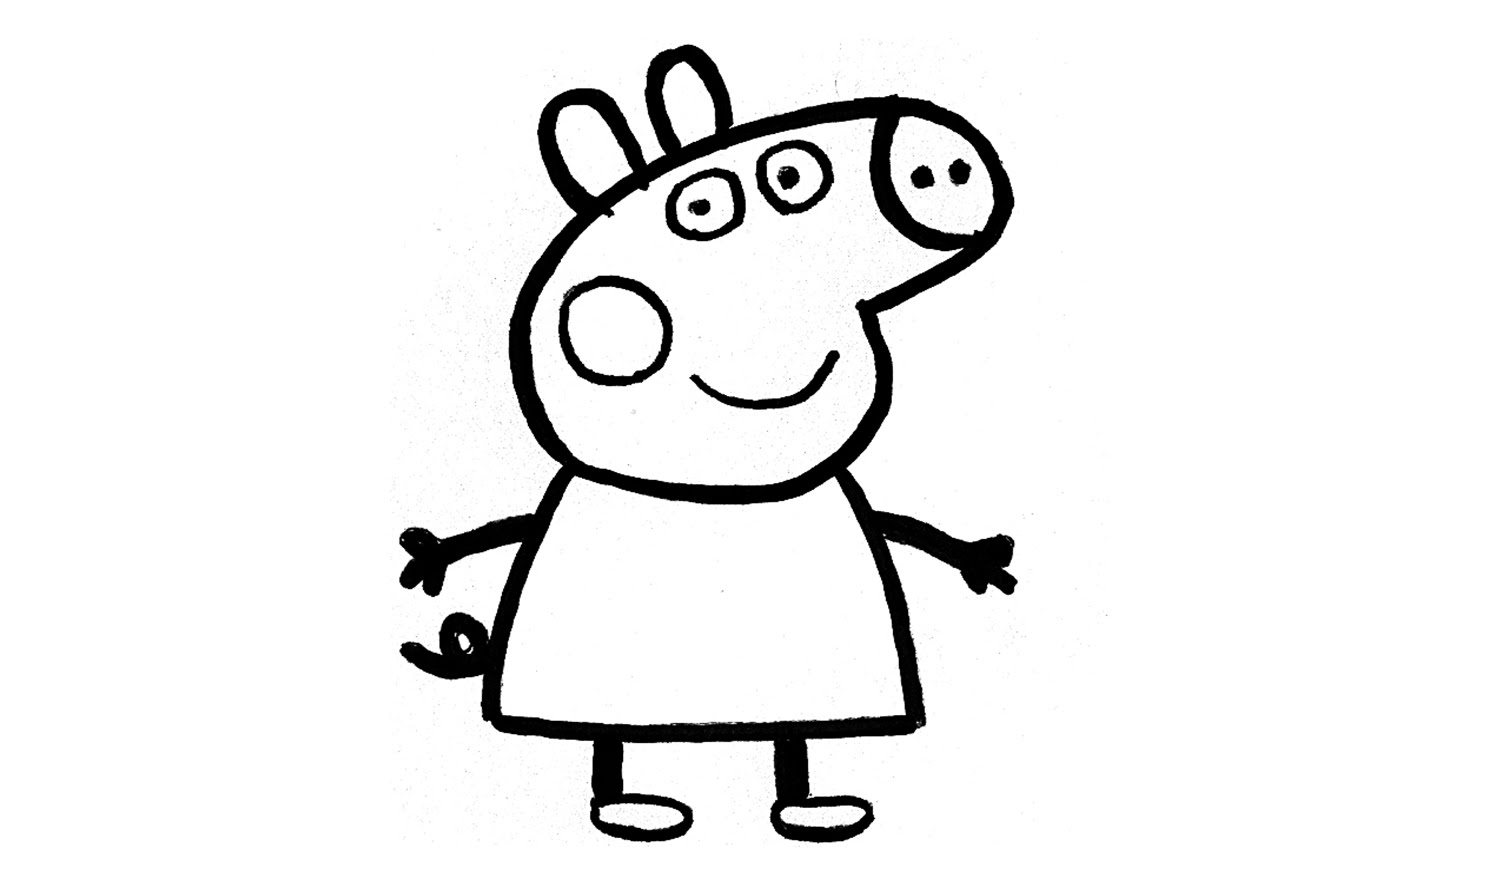 Игра Рисование со Свинкой Пеппой онлайн - играть бесплатно, без регистрации